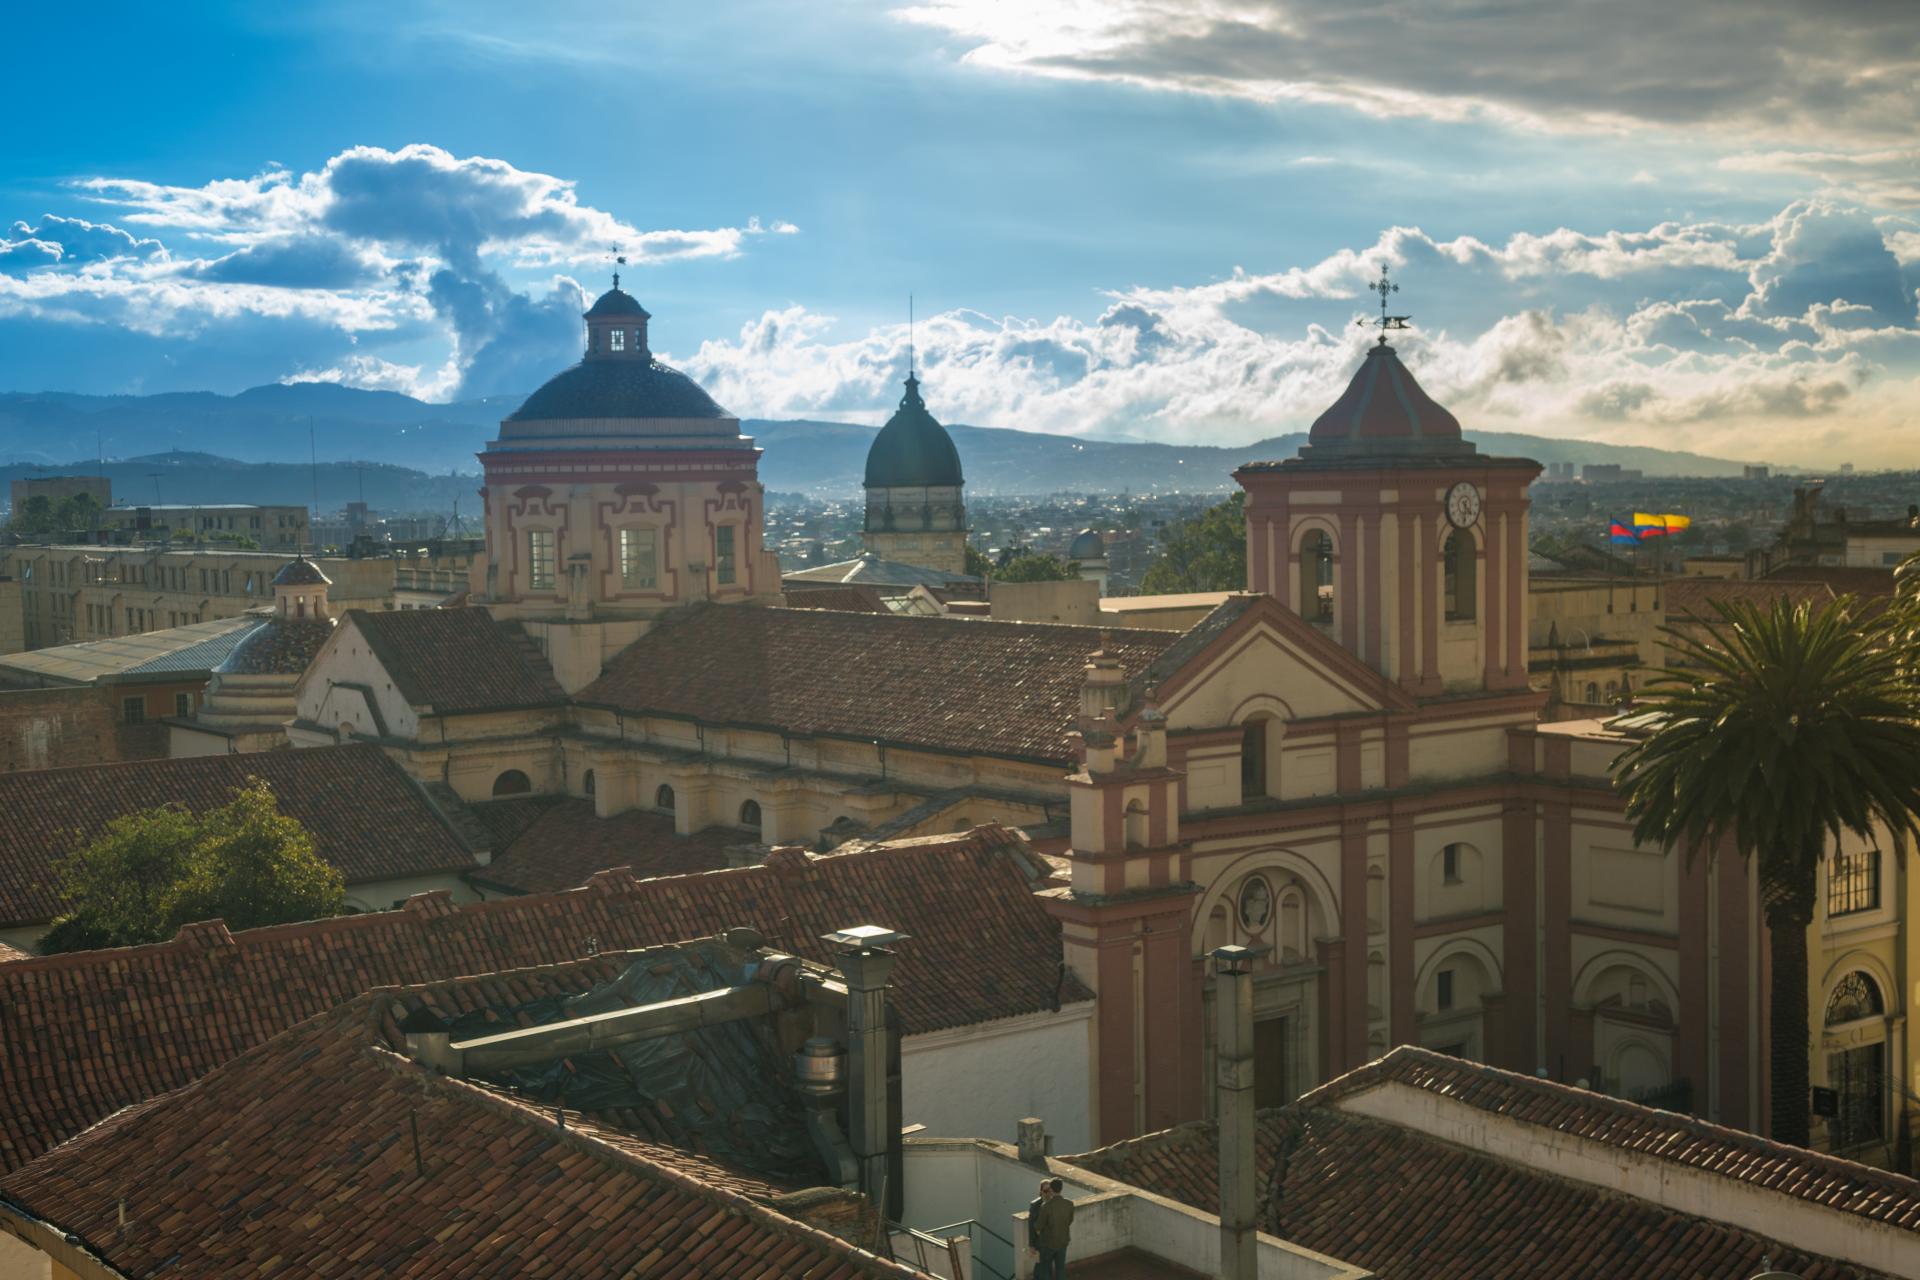 Das Zentrum der kolonialen Hauptstadt Bogota auf einer Stadttour durch Kolumbien entdecken